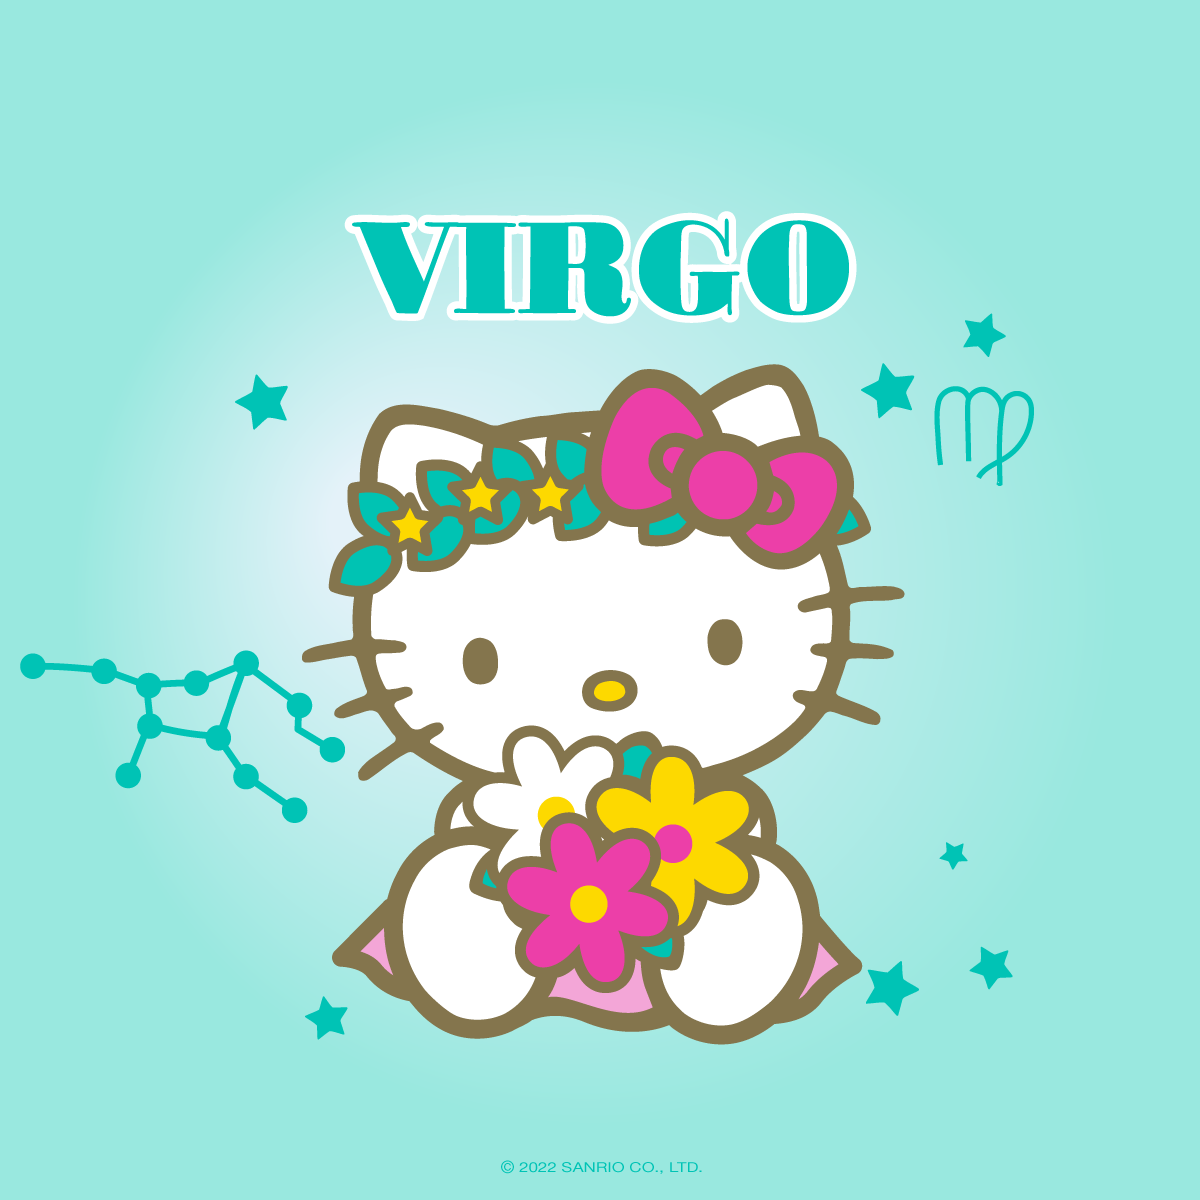 Hello Virgo Season